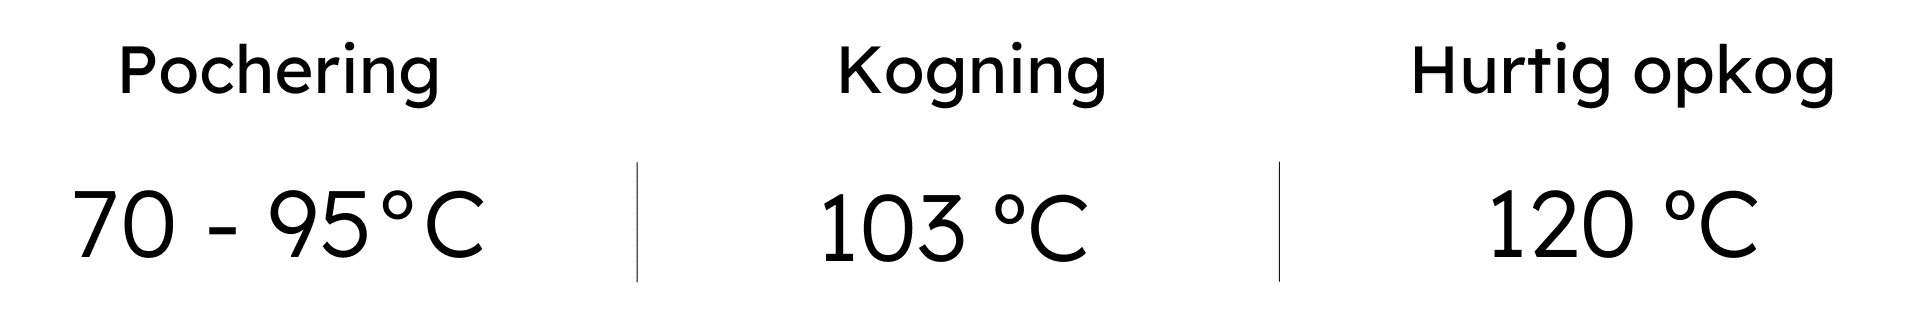 temperaturintervaller for pochering, kogning og hurtigt opkog